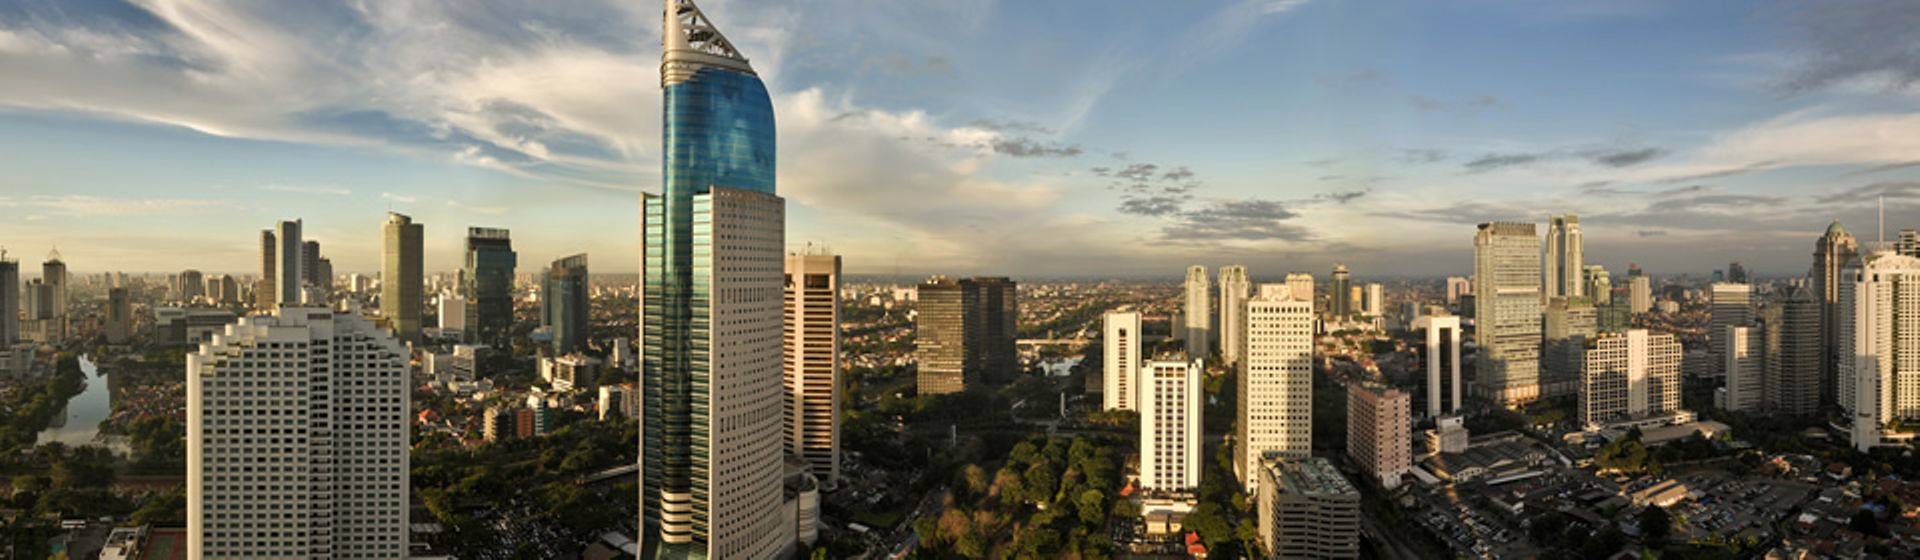 Holidays to Jakarta Image